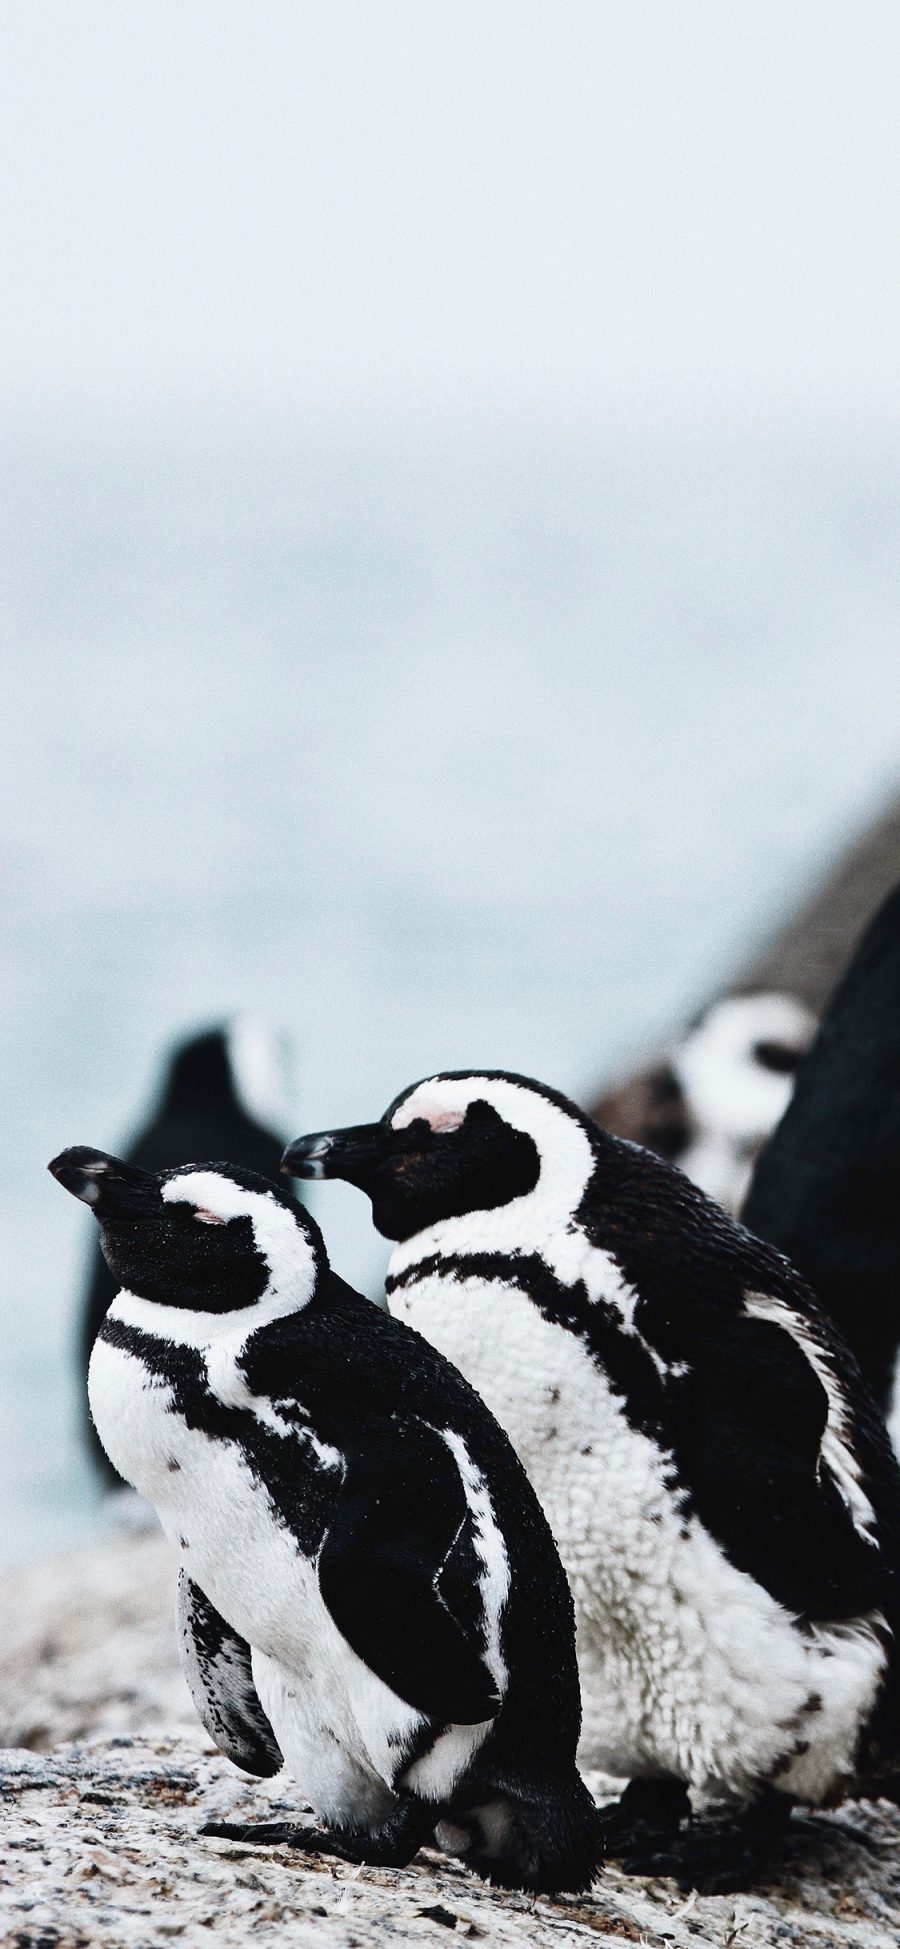 [2436×1125]保护动物 南极 企鹅 黑白 苹果手机壁纸图片